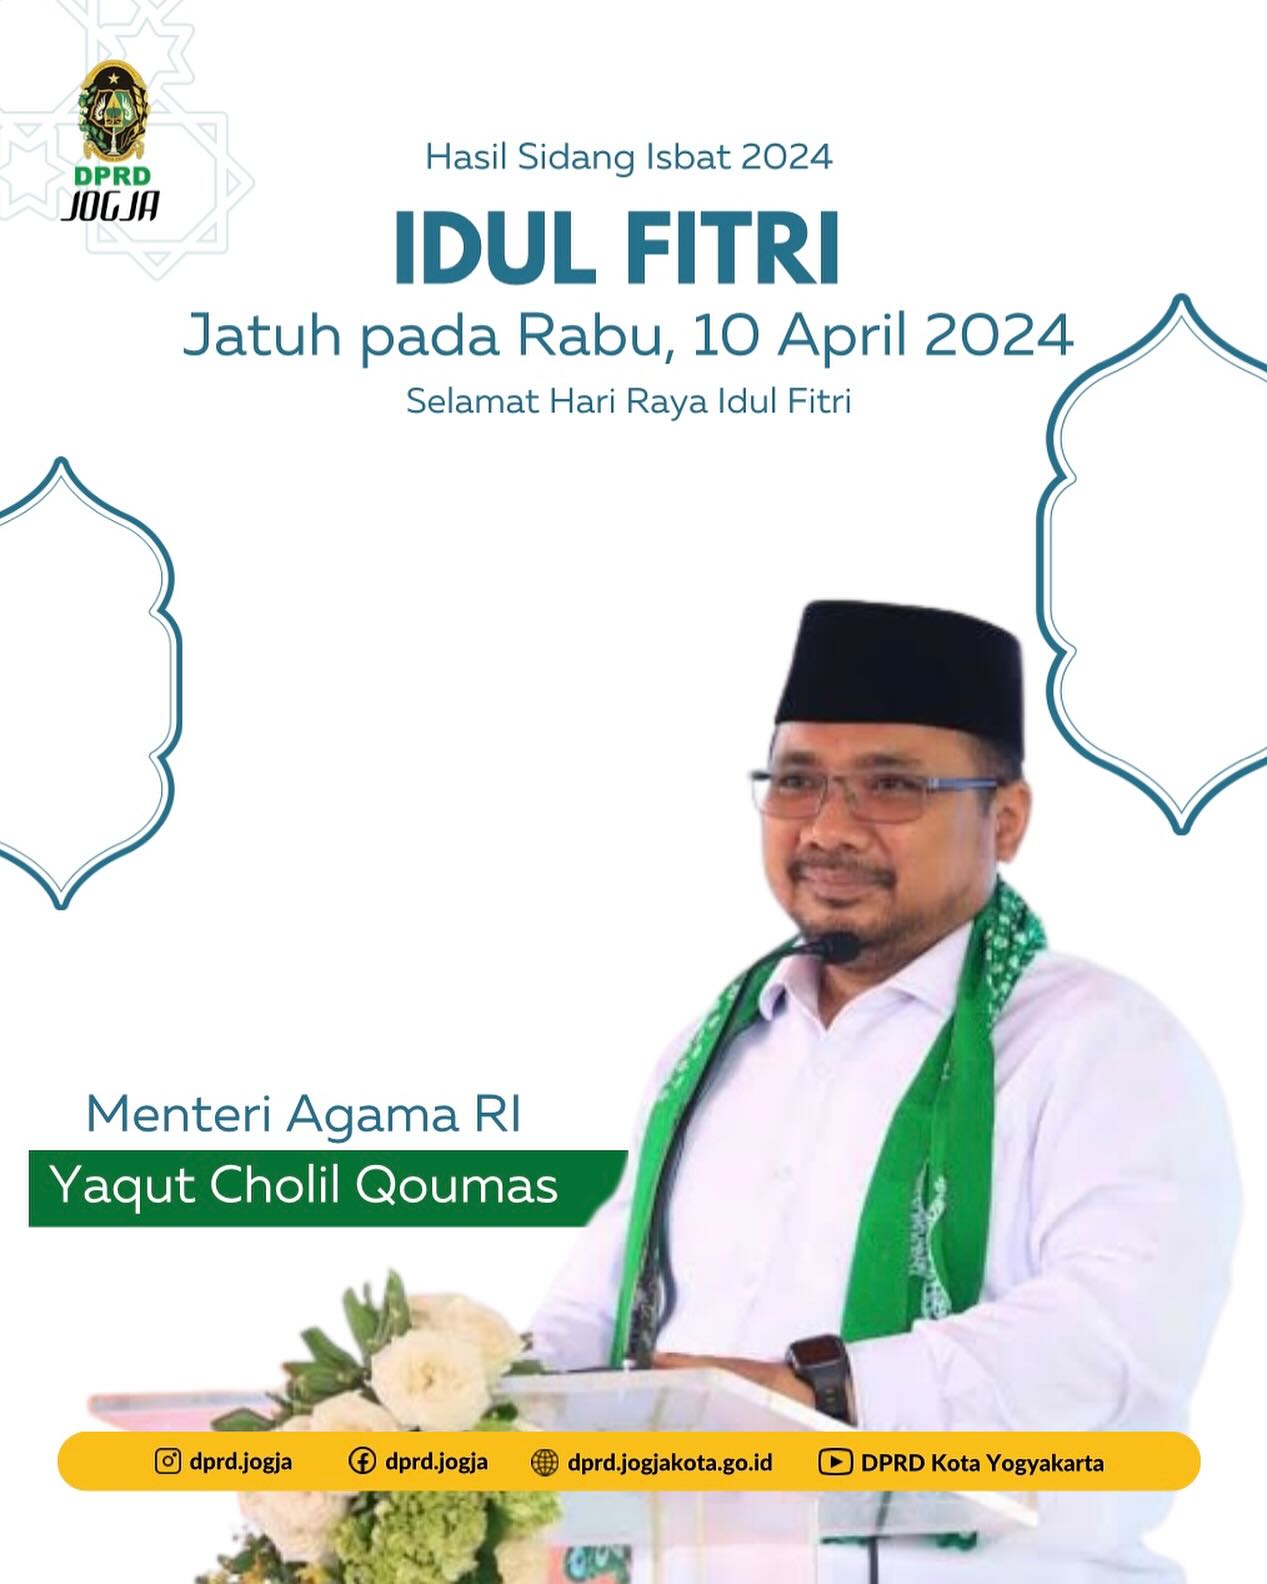 Hasil Sidang Isbat: Idul Fitri 2024 Jatuh pada Rabu, 10 April 2024